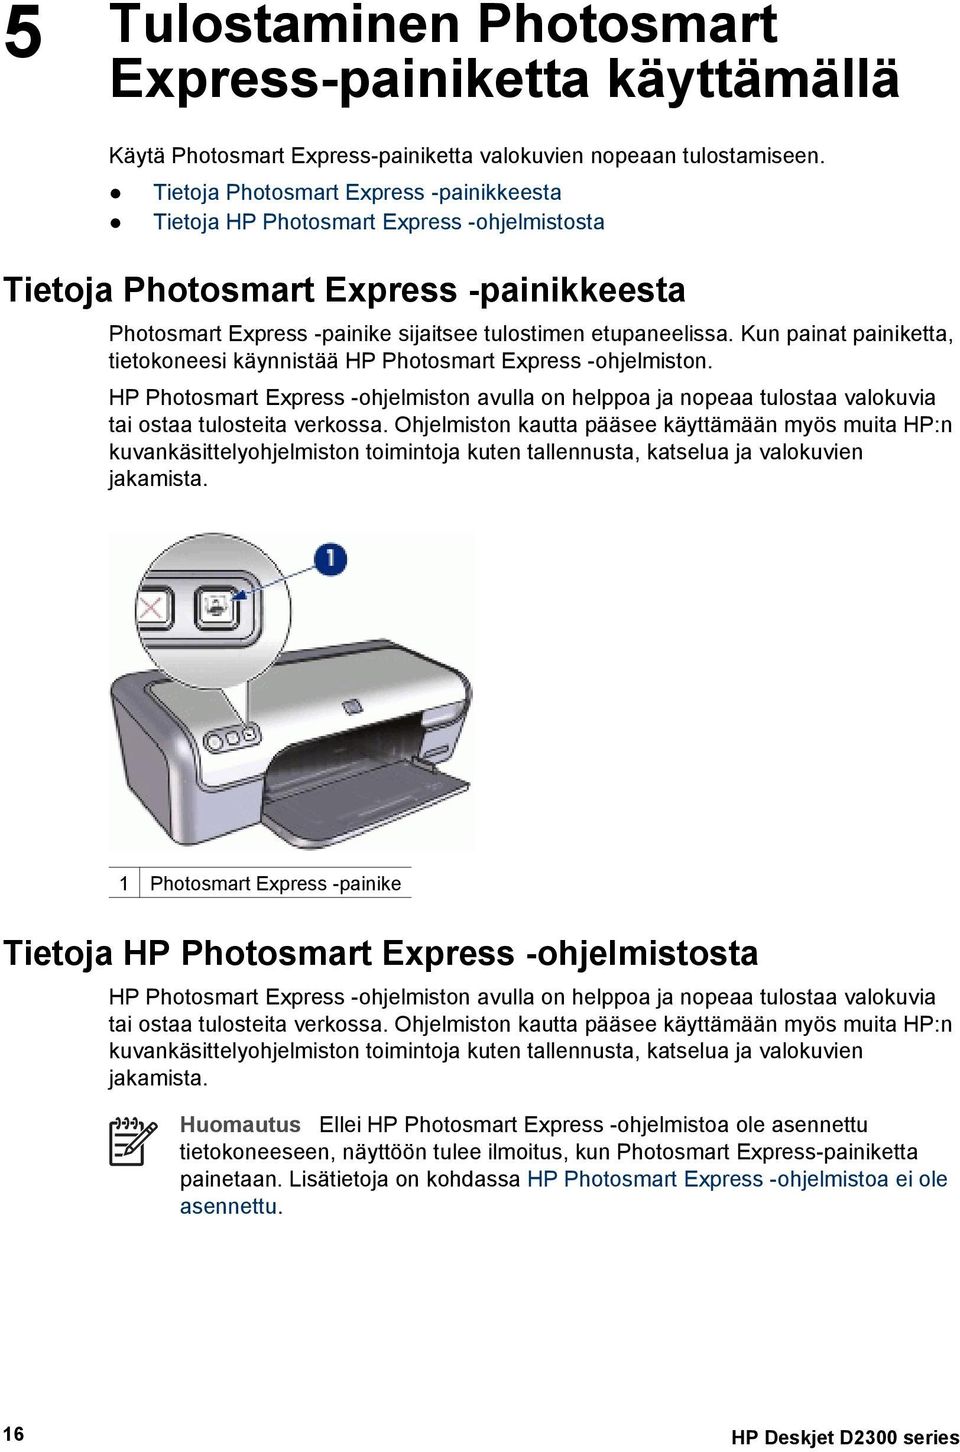 Kun painat painiketta, tietokoneesi käynnistää HP Photosmart Express -ohjelmiston. HP Photosmart Express -ohjelmiston avulla on helppoa ja nopeaa tulostaa valokuvia tai ostaa tulosteita verkossa.